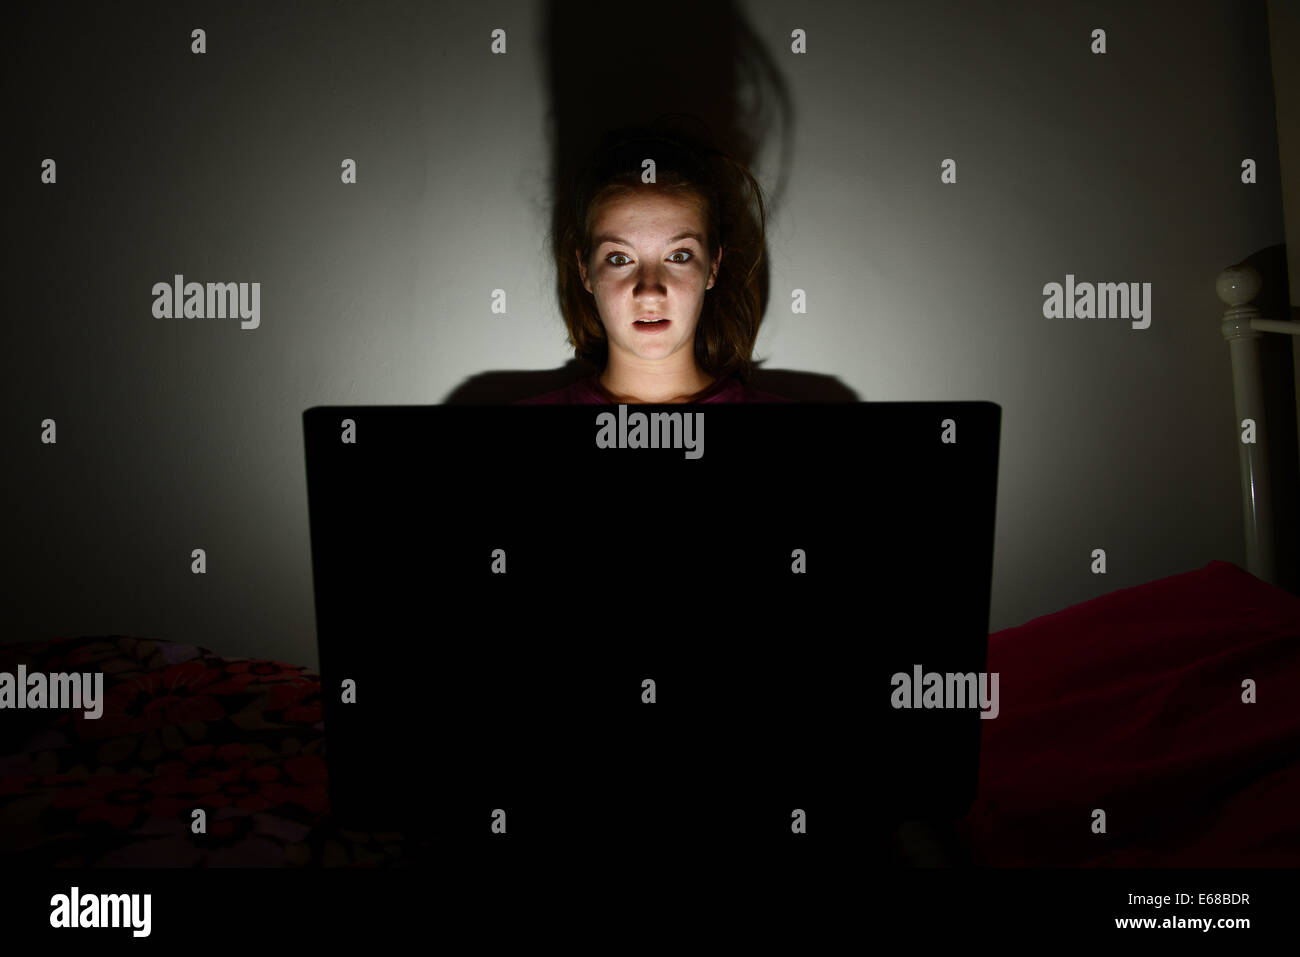 Equipo portátil que se utiliza por un niño en su dormitorio, adolescente mediante un ordenador portátil solo en su habitación Foto de stock